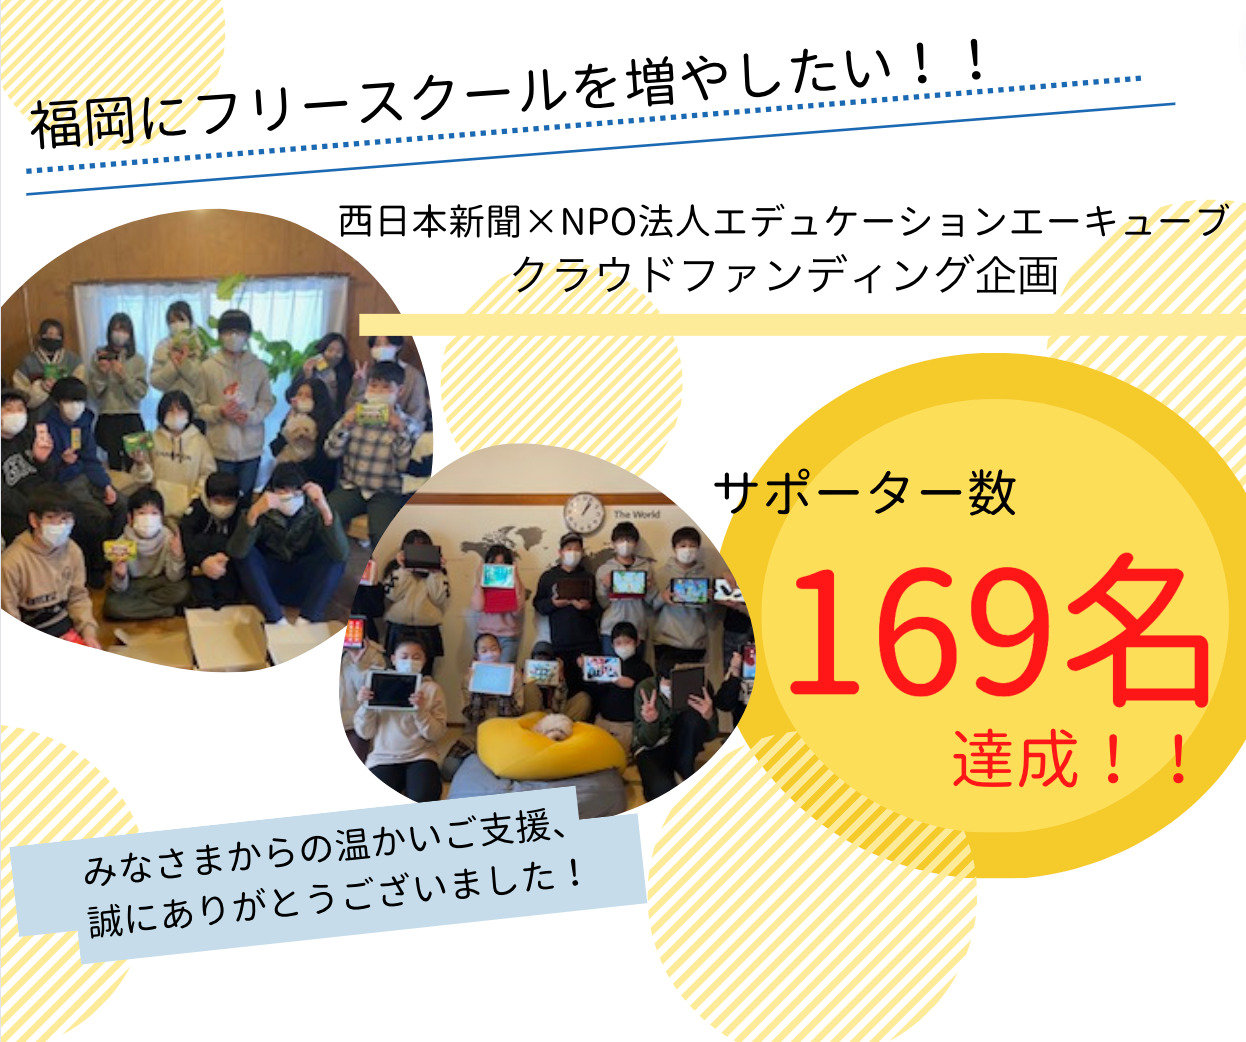 西日本新聞社と共同で実施した「学校以外の選択肢を増やすためのクラウドファンディング」で169名の支援を頂きました